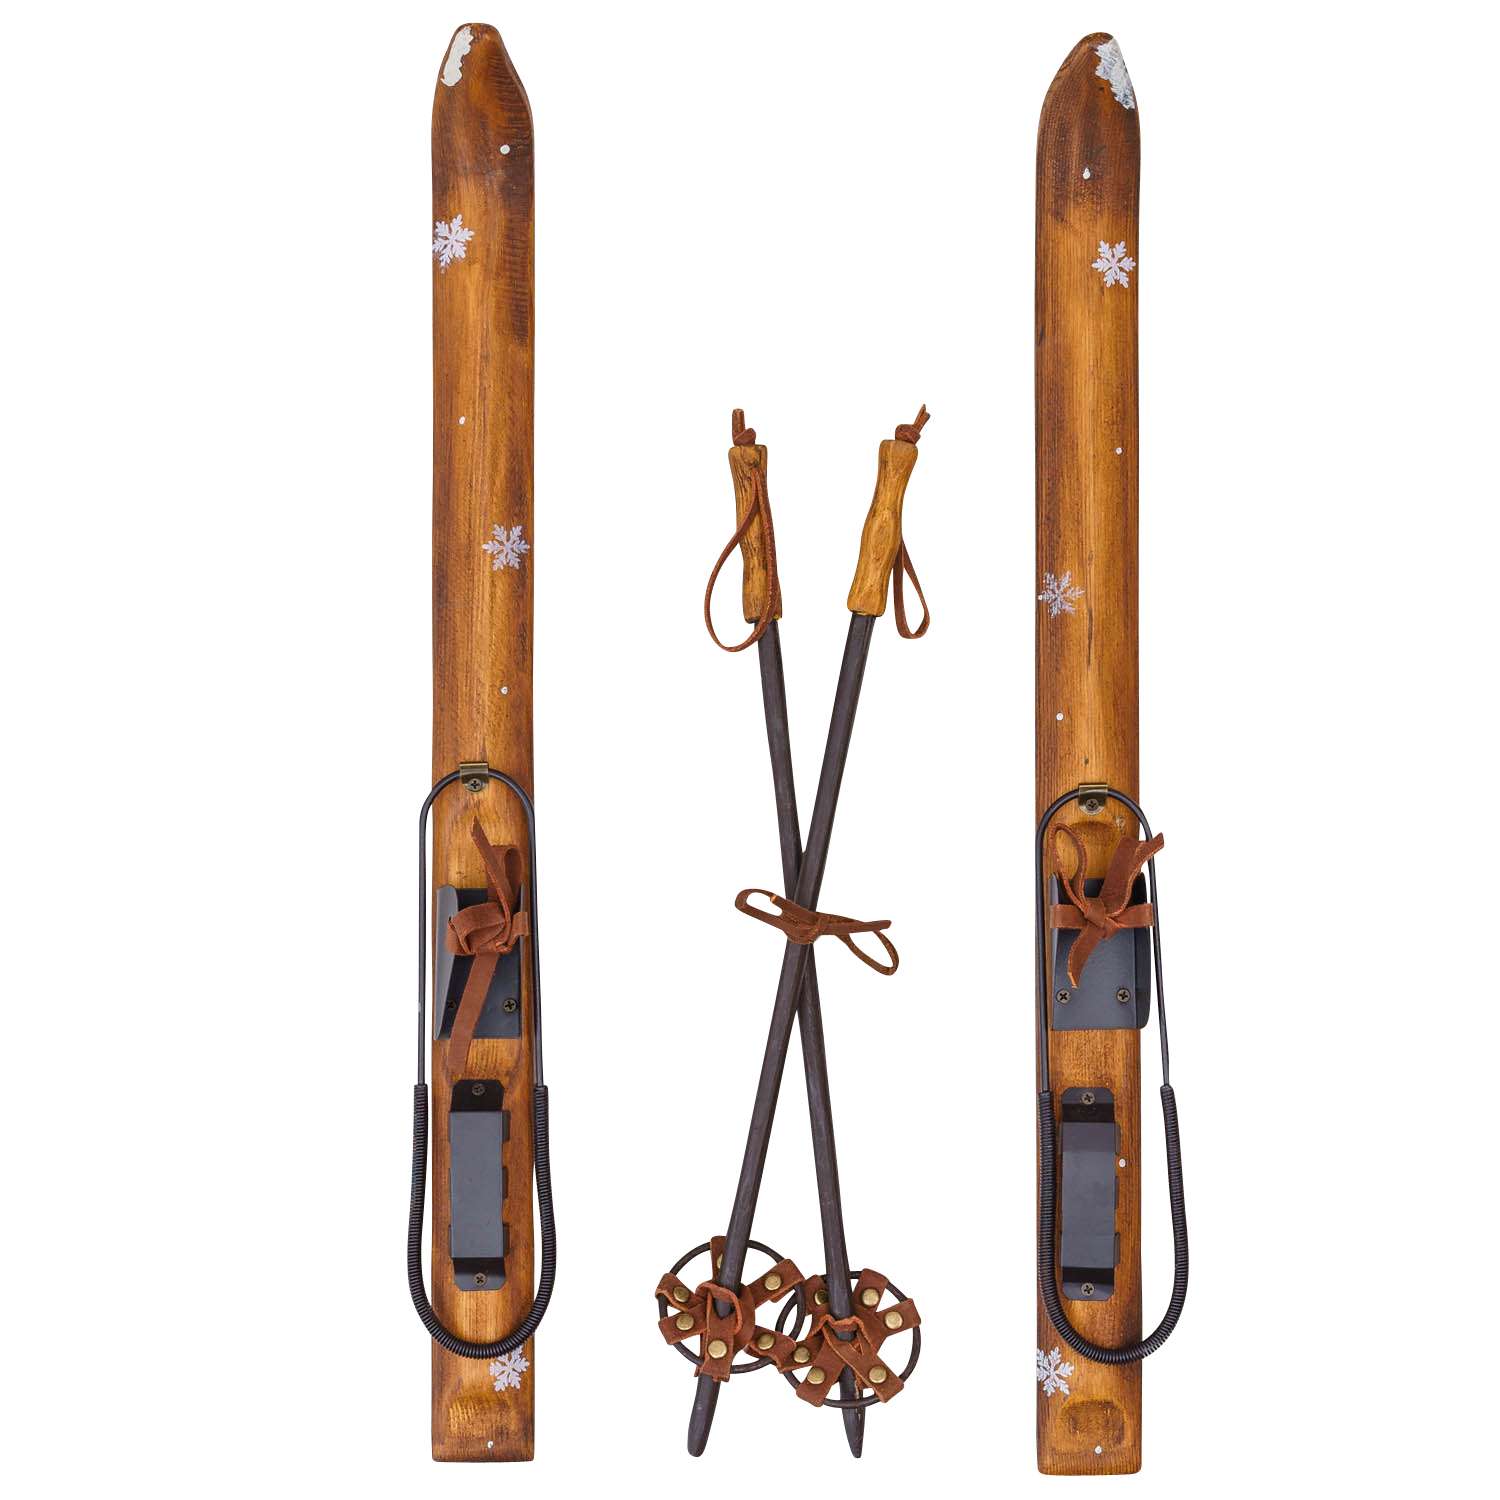 Behoren vat wenkbrauw Ski set houten ski met binding stokken sport winter decoratie 52cm antieke  stijl | Nederland